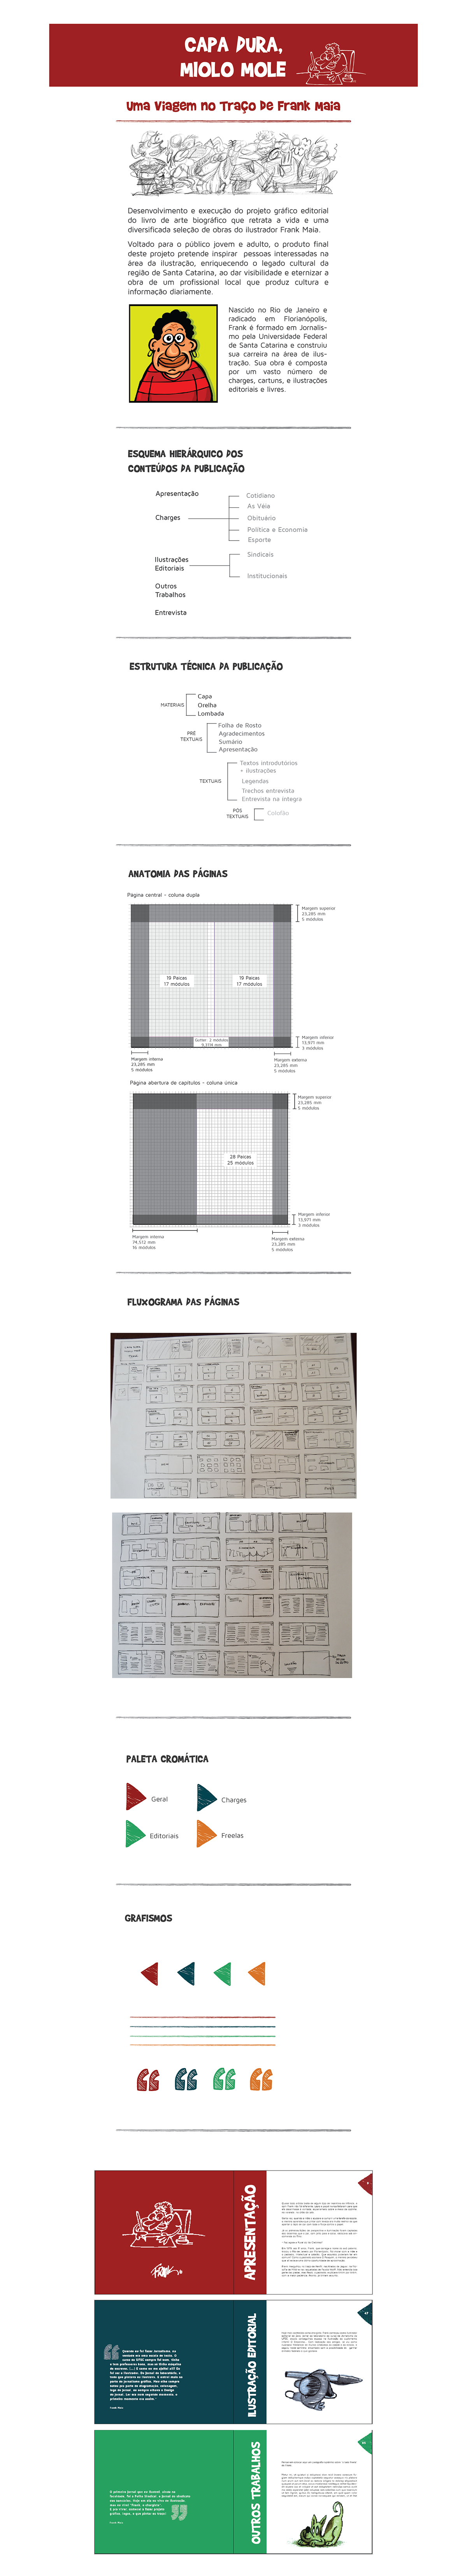 Livro editorial Ilustração frankmaia designdelivro DesignEditorial